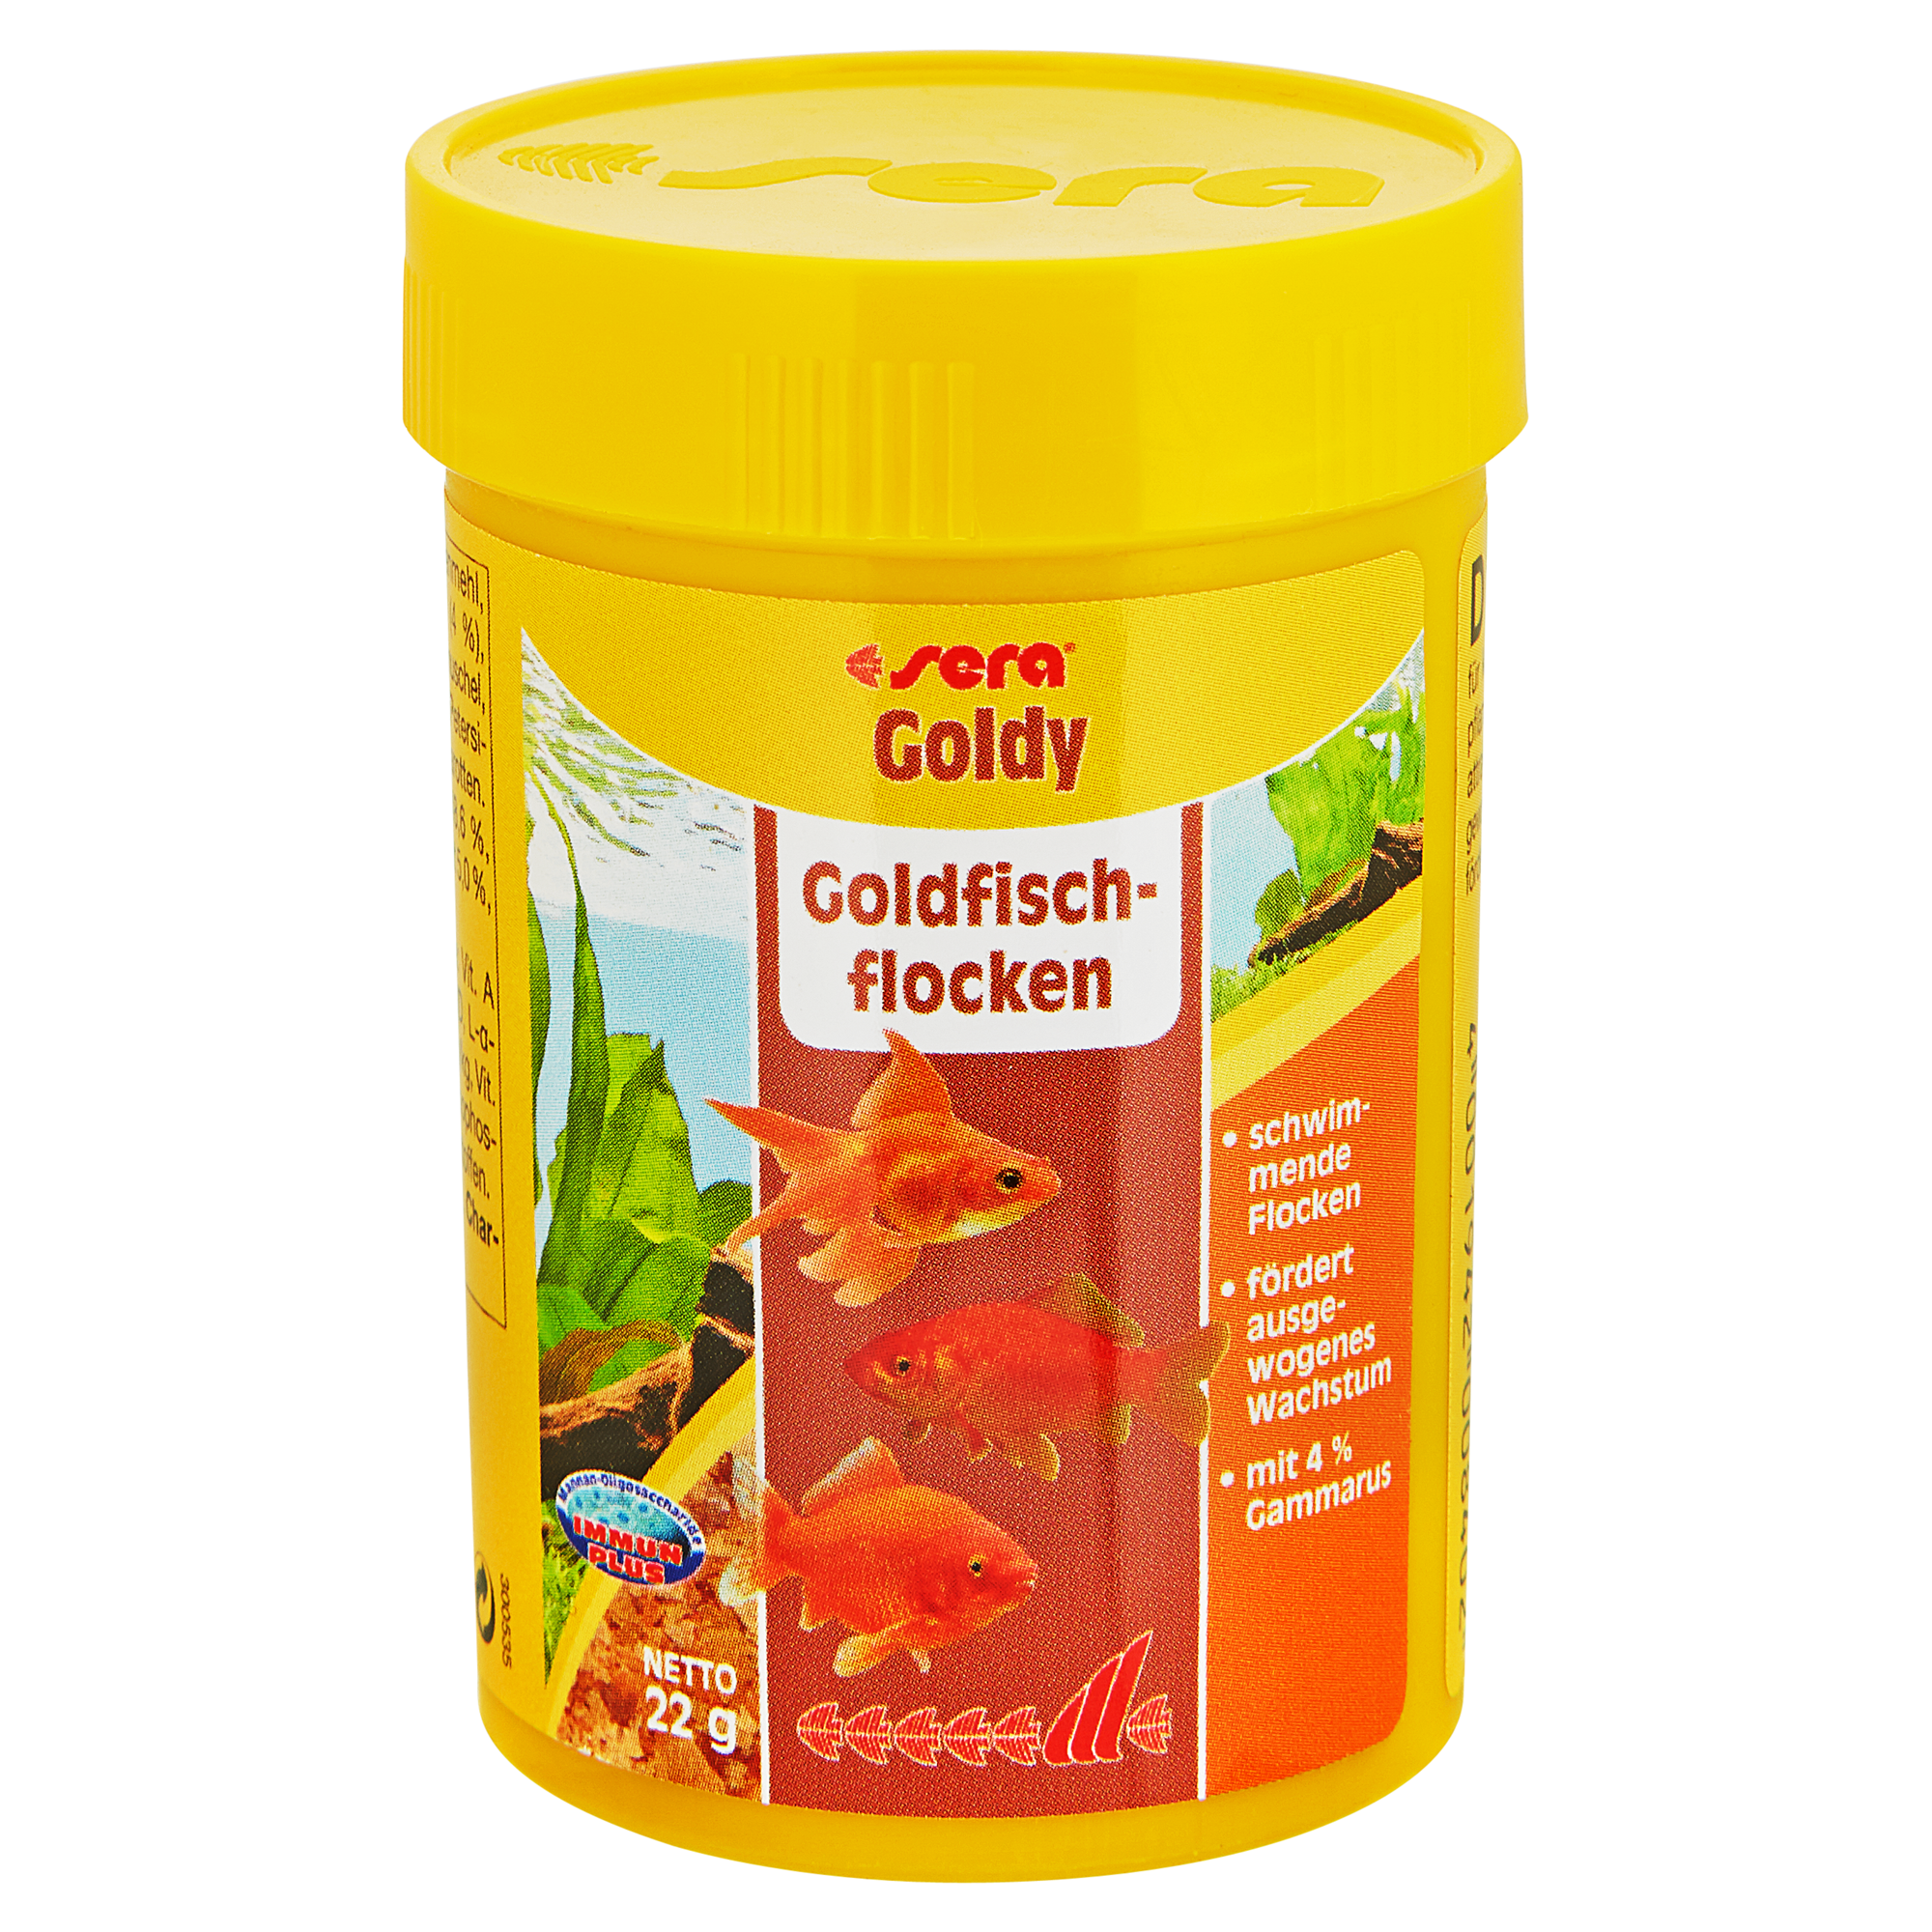 Fischfutter Goldy Goldfischflocken 22 g + product picture